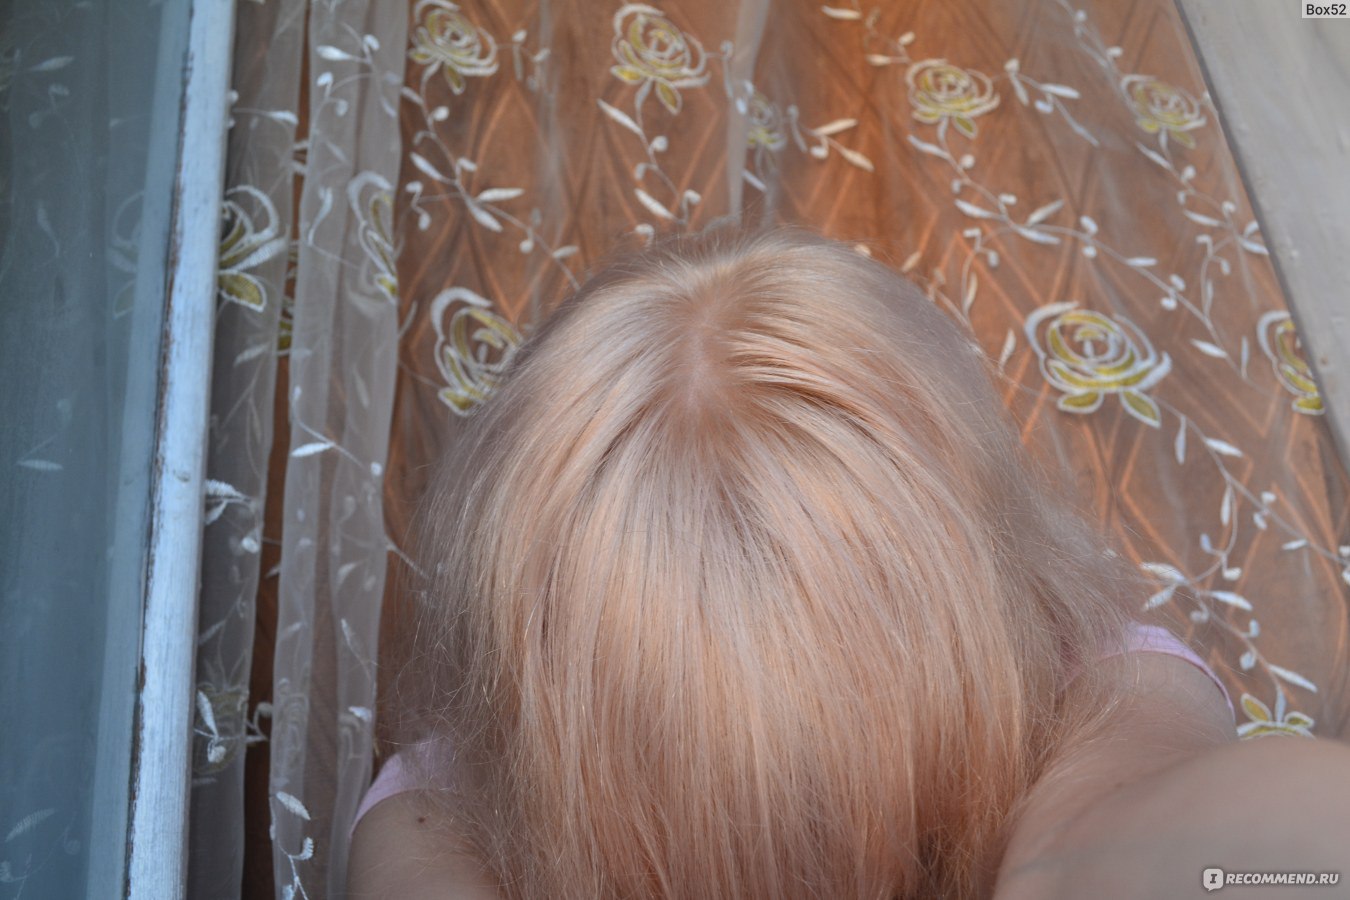 Галант косметик супра осветлитель для волос для мелирования